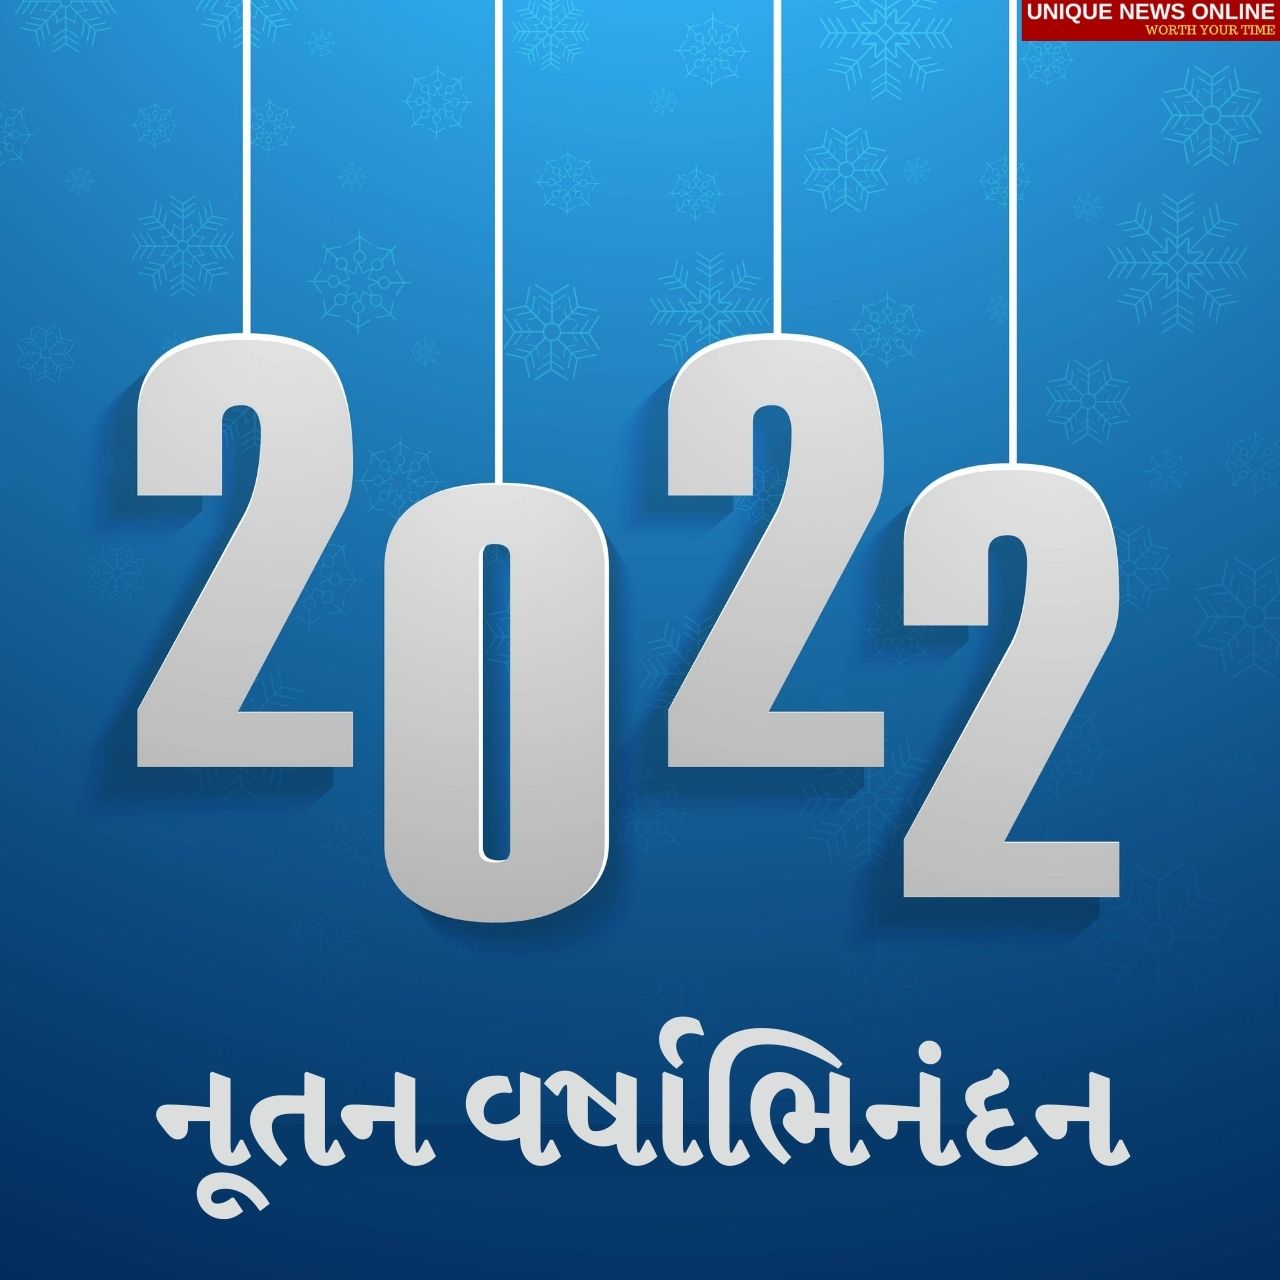 عام جديد سعيد 2022: أسعار الغوجاراتية ، والتمنيات ، والتحيات ، والصور عالية الدقة ، والرسائل ، والملصقات ، والعبارات للمشاركة